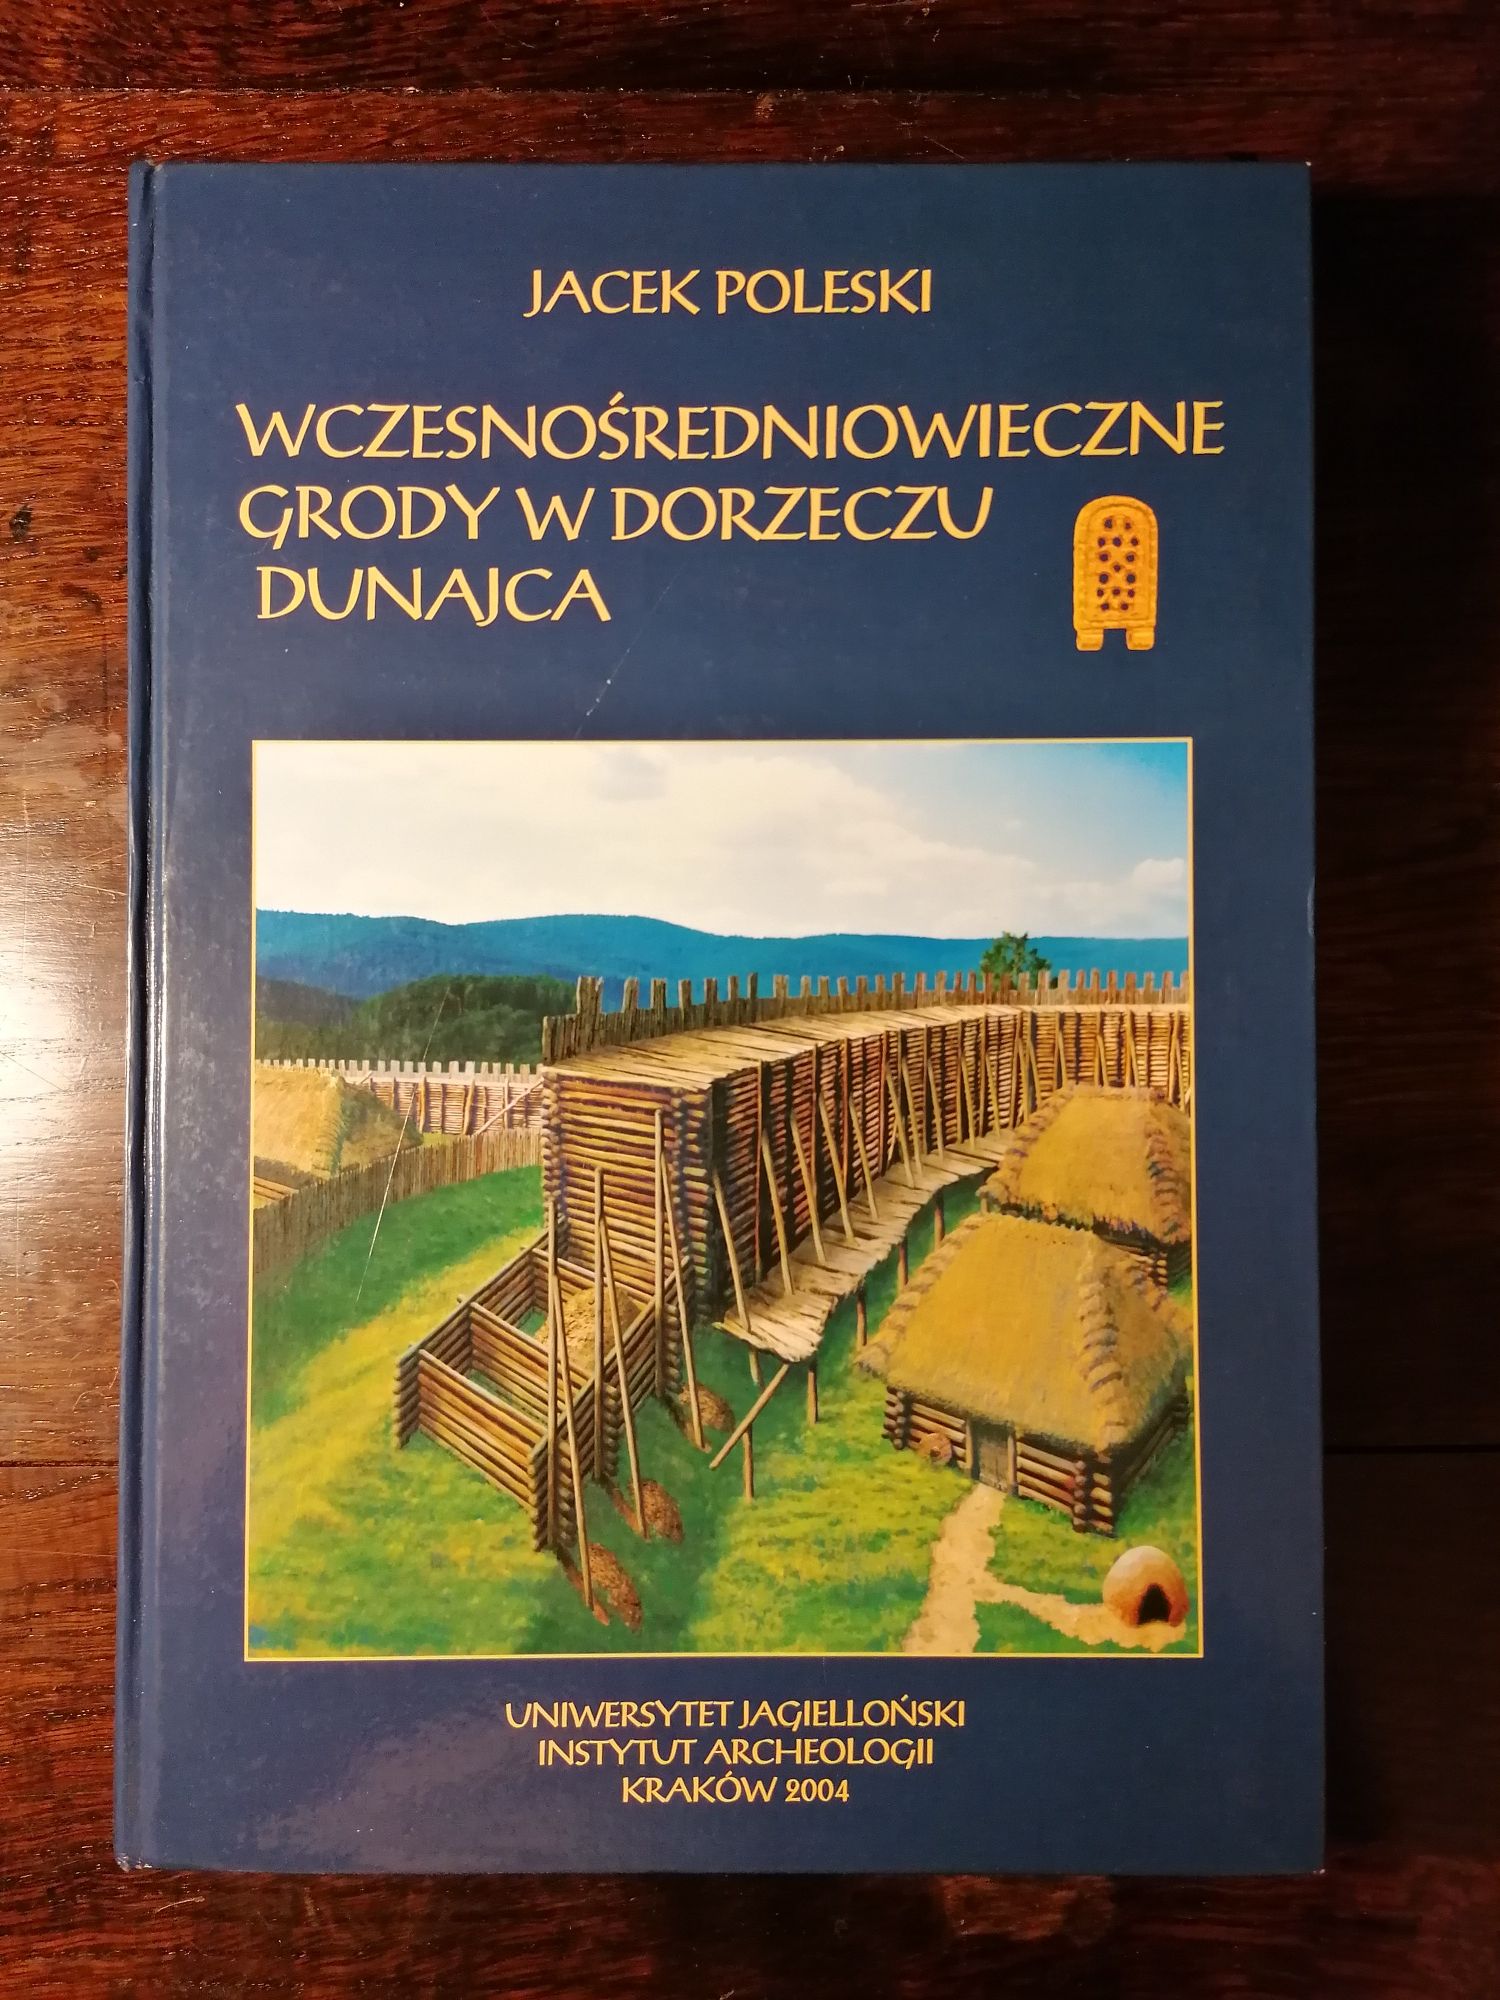 Wczesnośredniowieczne grody w dorzeczu Dunajca Poleski 2004